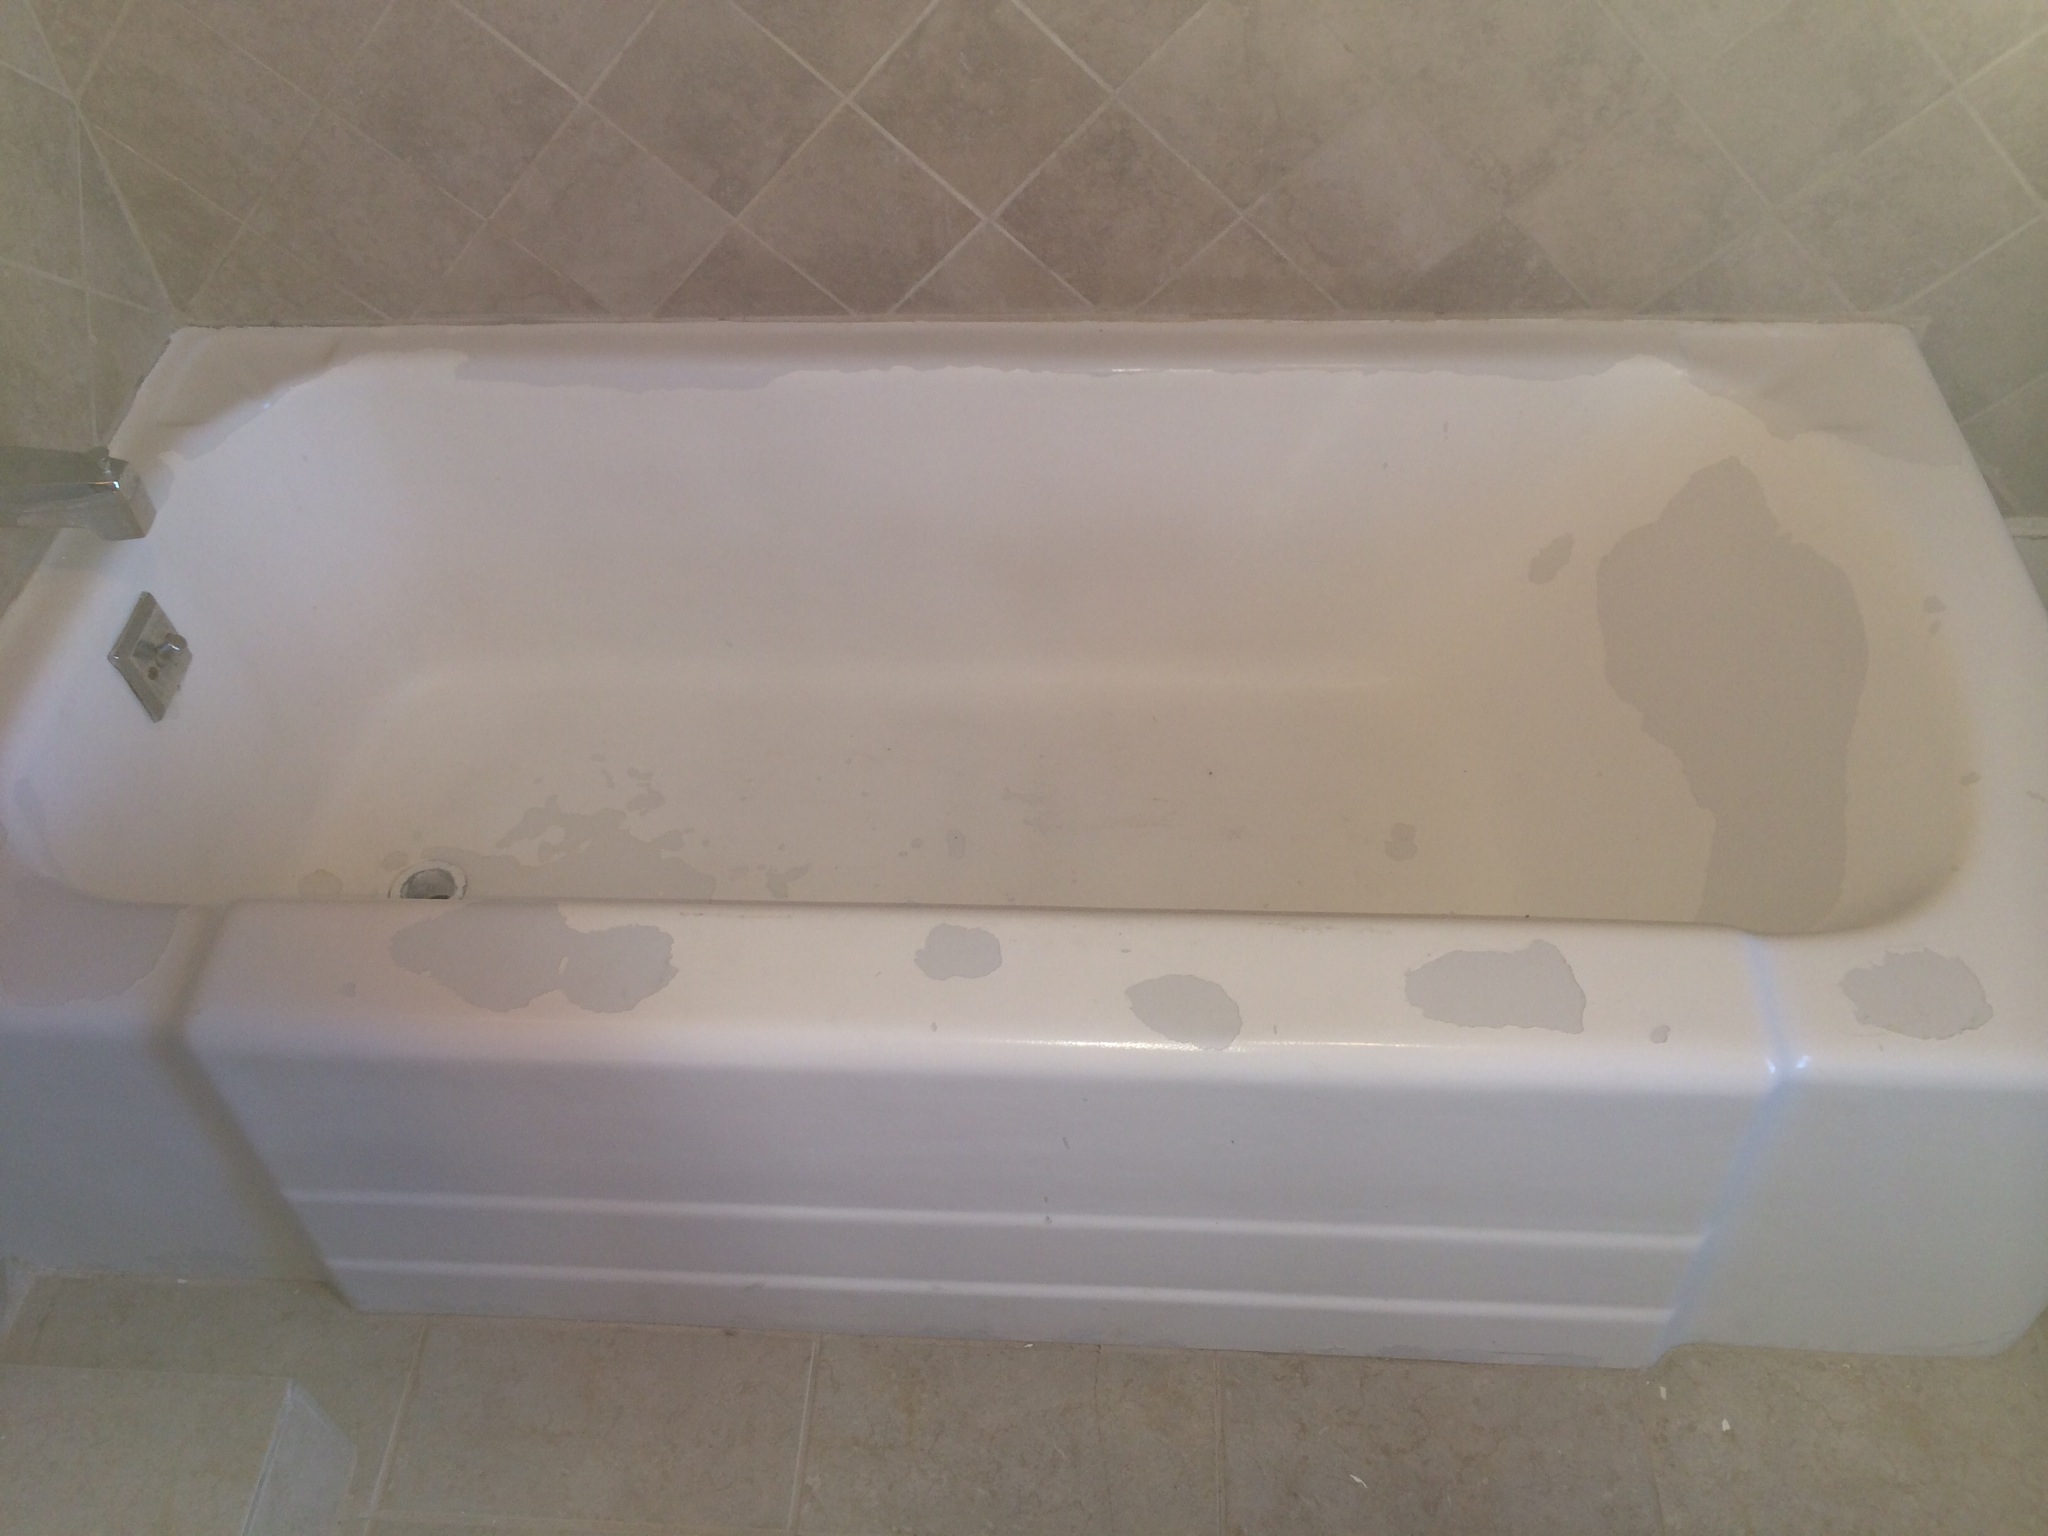 DIY bathtub resurfacing kits